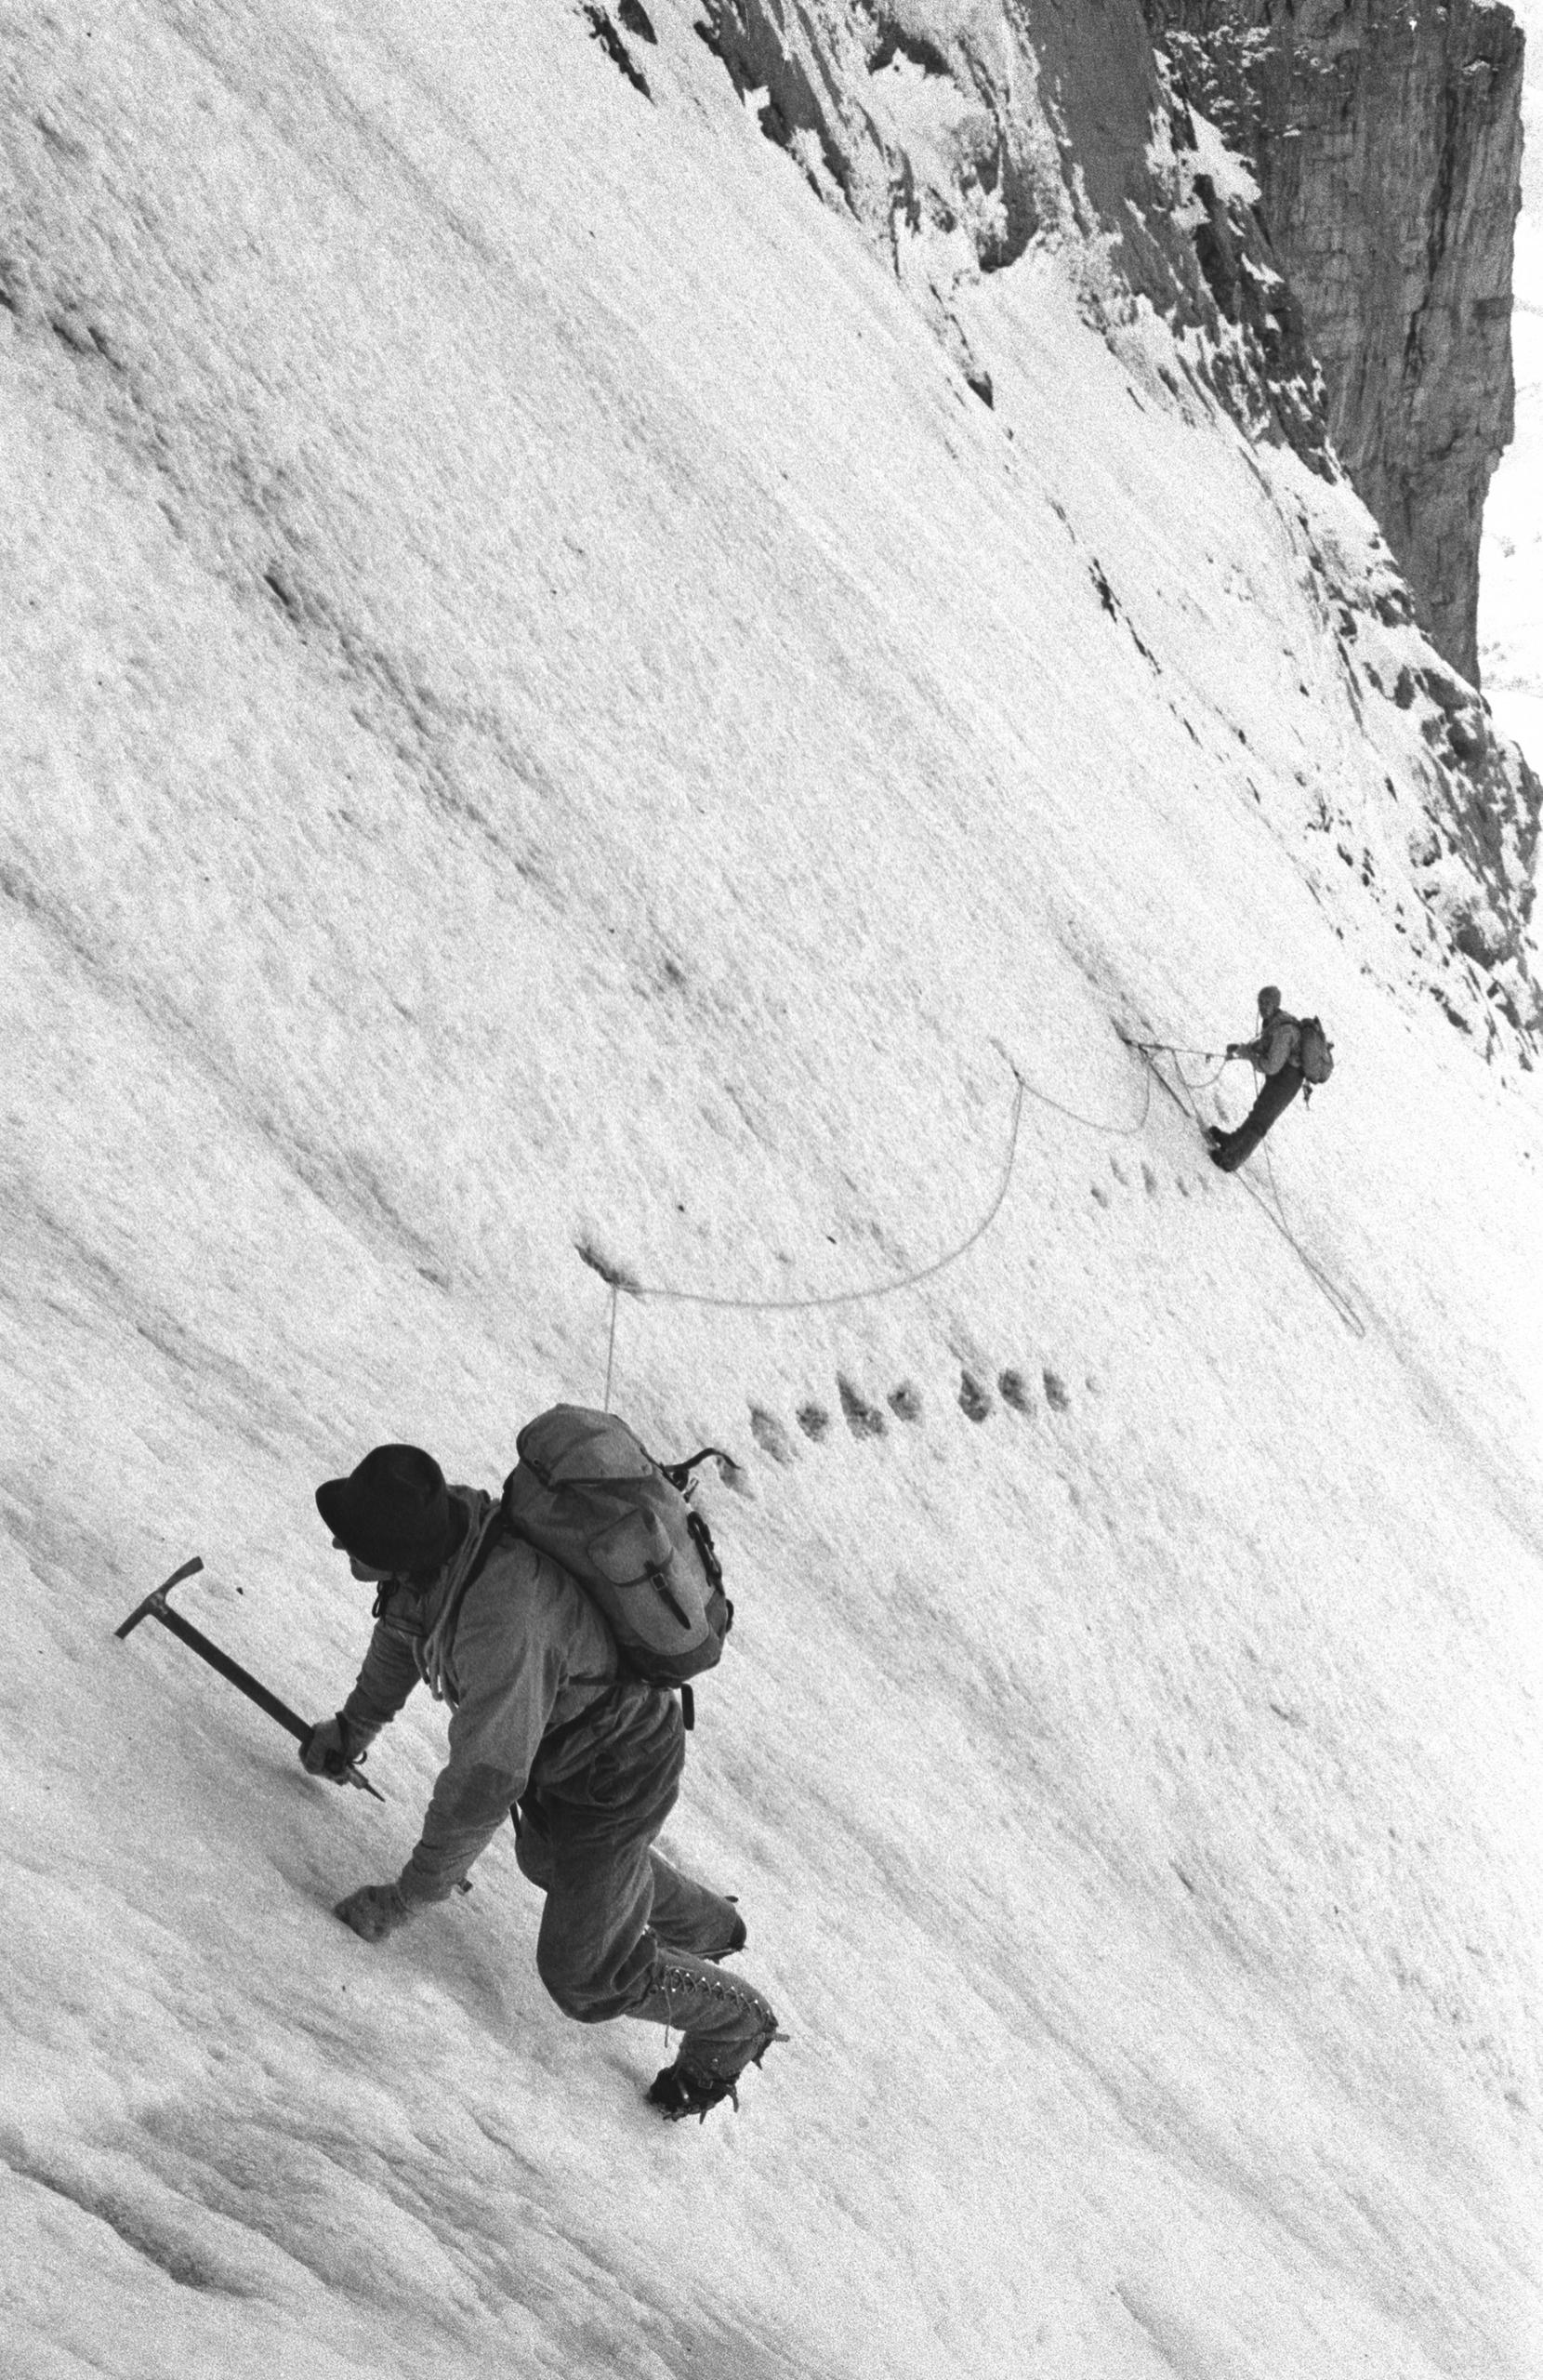 Dos alpinistas ascienden una montaña.